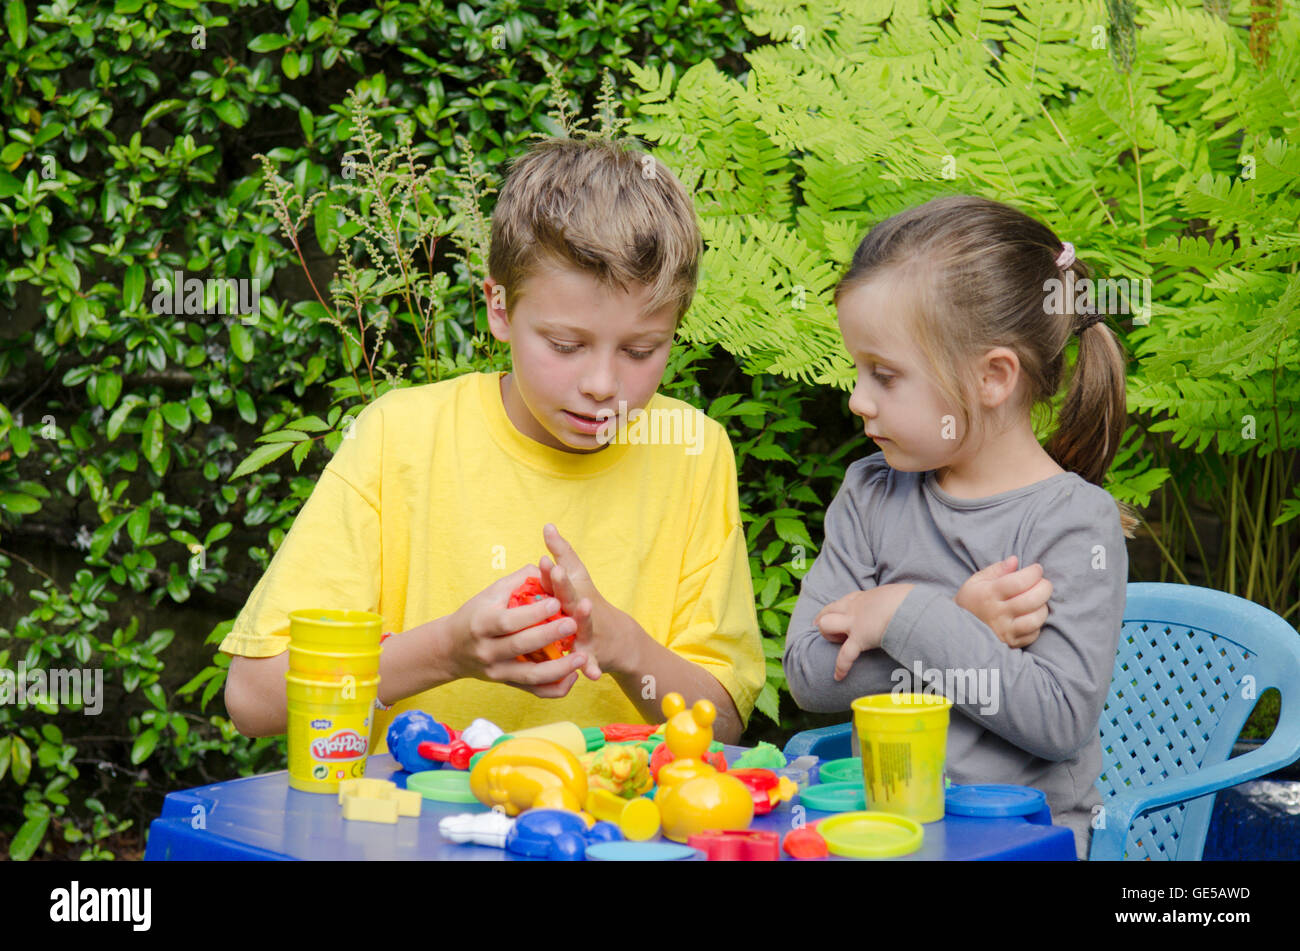 Bimba di tre anni e dieci-anno-vecchio ragazzo, fratello e sorella, giocando con la modellazione Play-Doh putty. Regno Unito. Fuori in giardino. Foto Stock